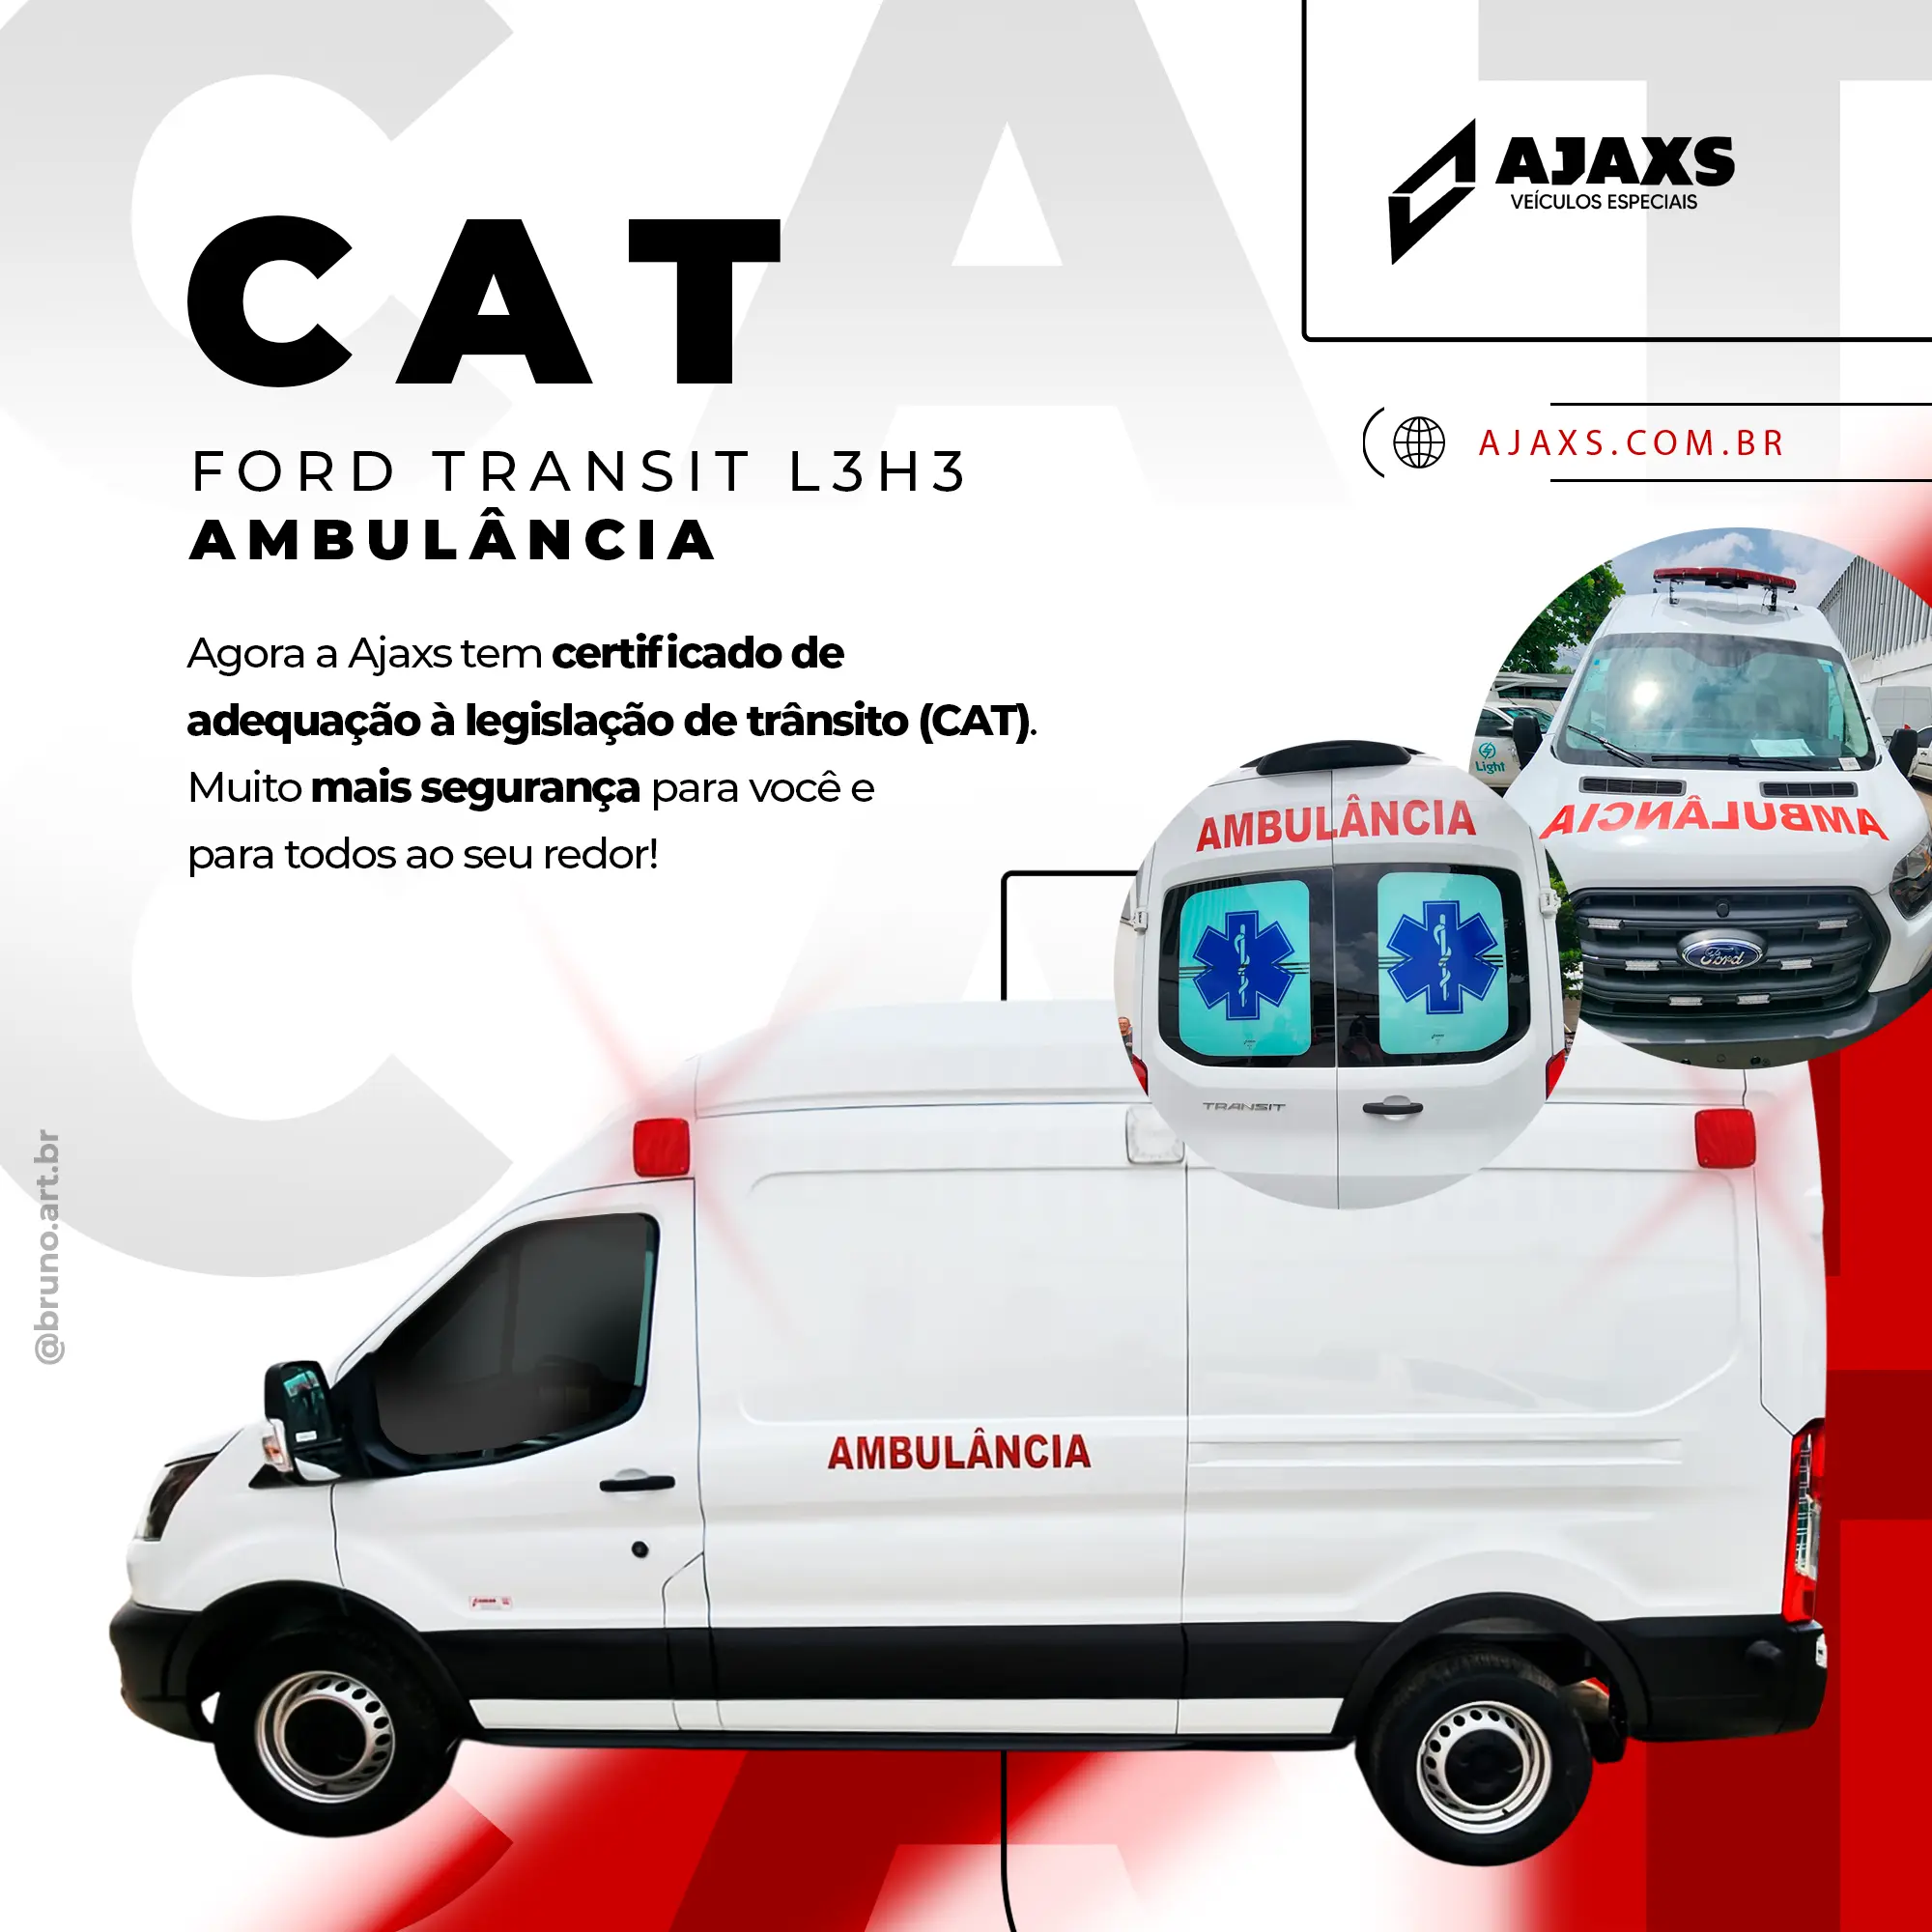 CAT Ford Transit L3H3 Ambulancia Ajaxs Veiculos especiais